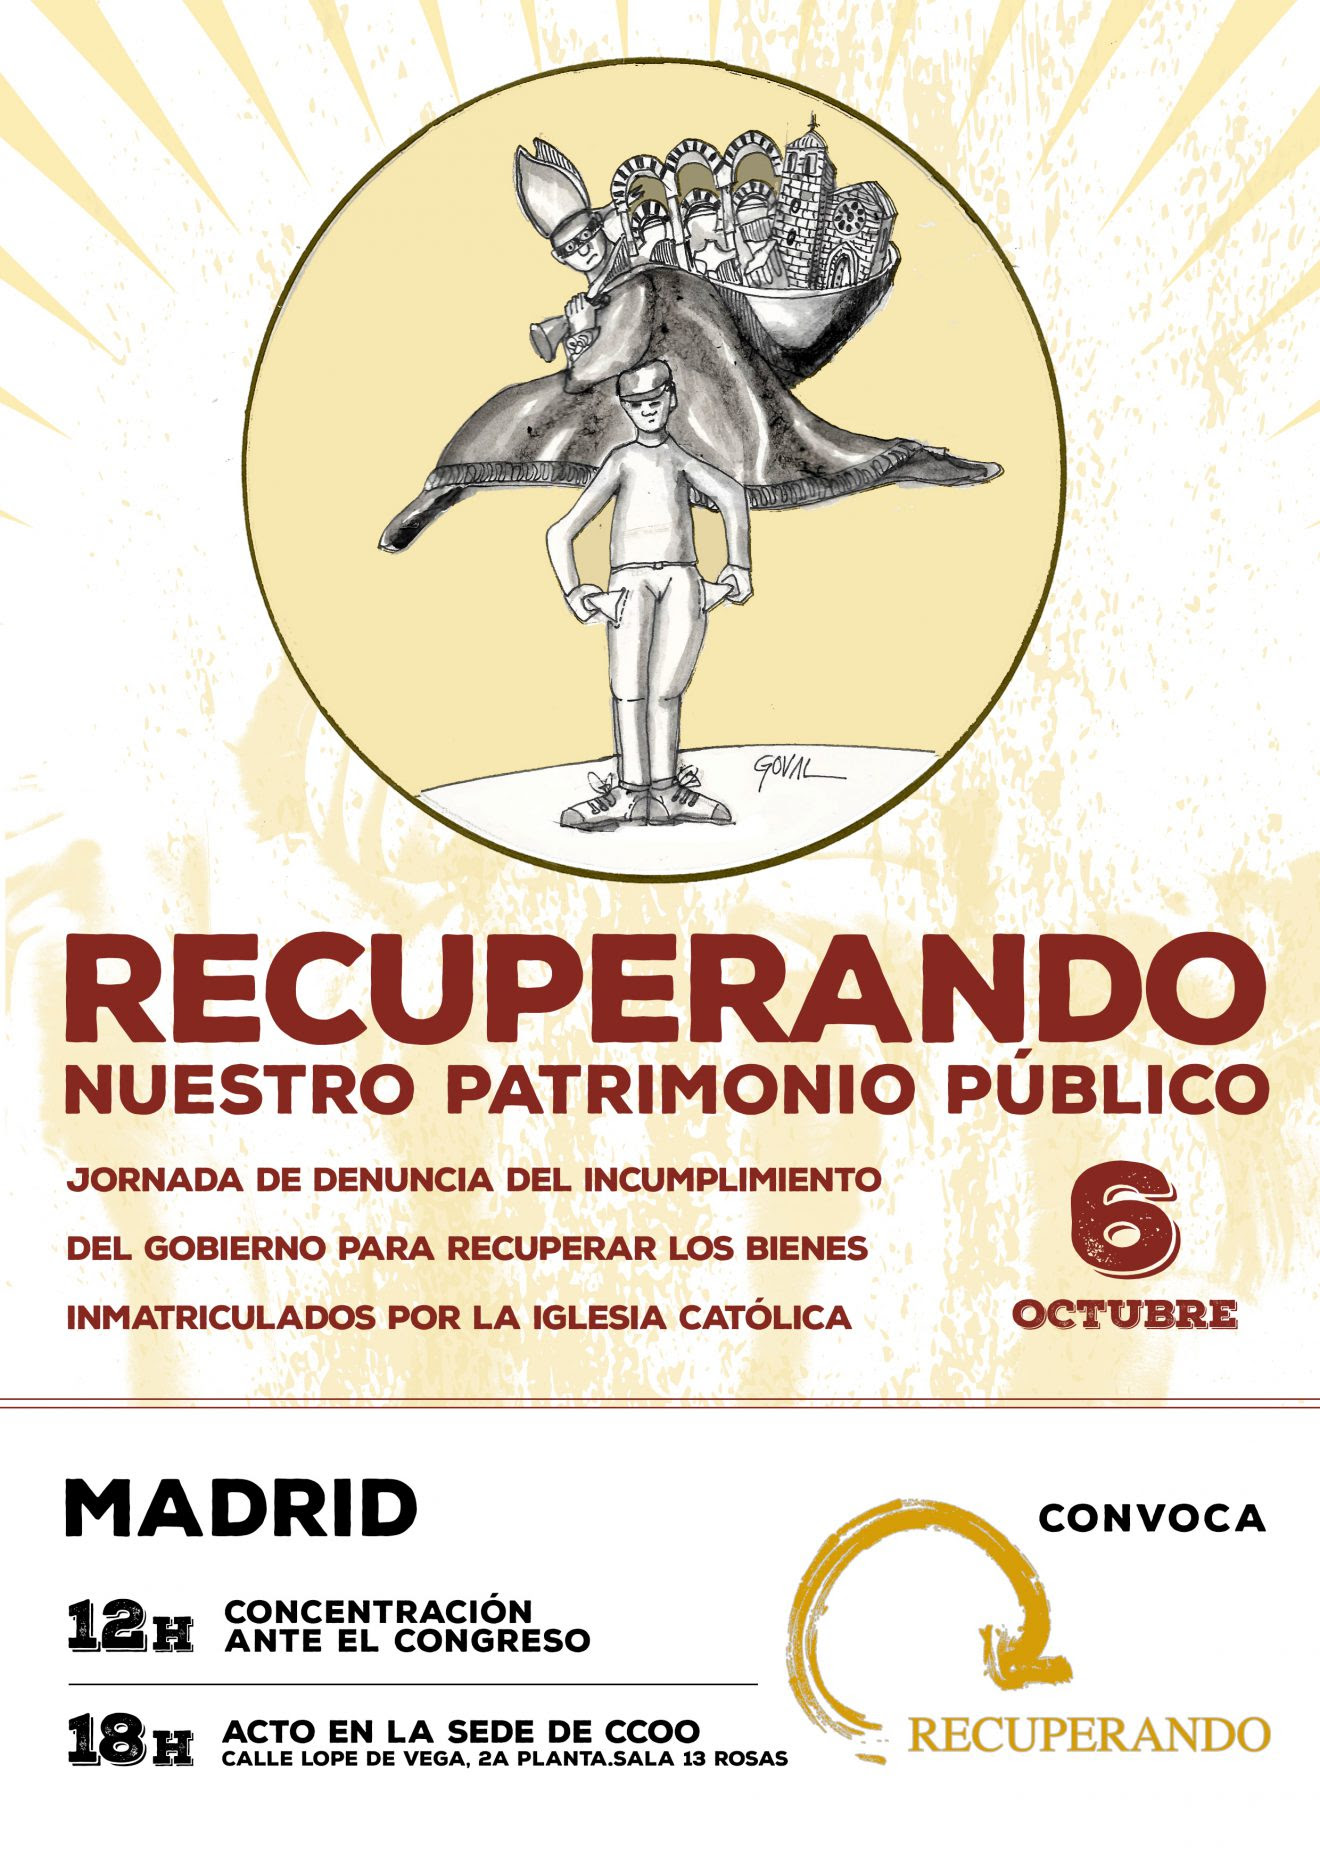 CONVOCATORIA: 6 de octubre, 12h, concentración ante el Congreso para denunciar las inmatriculaciones de la iglesia católica